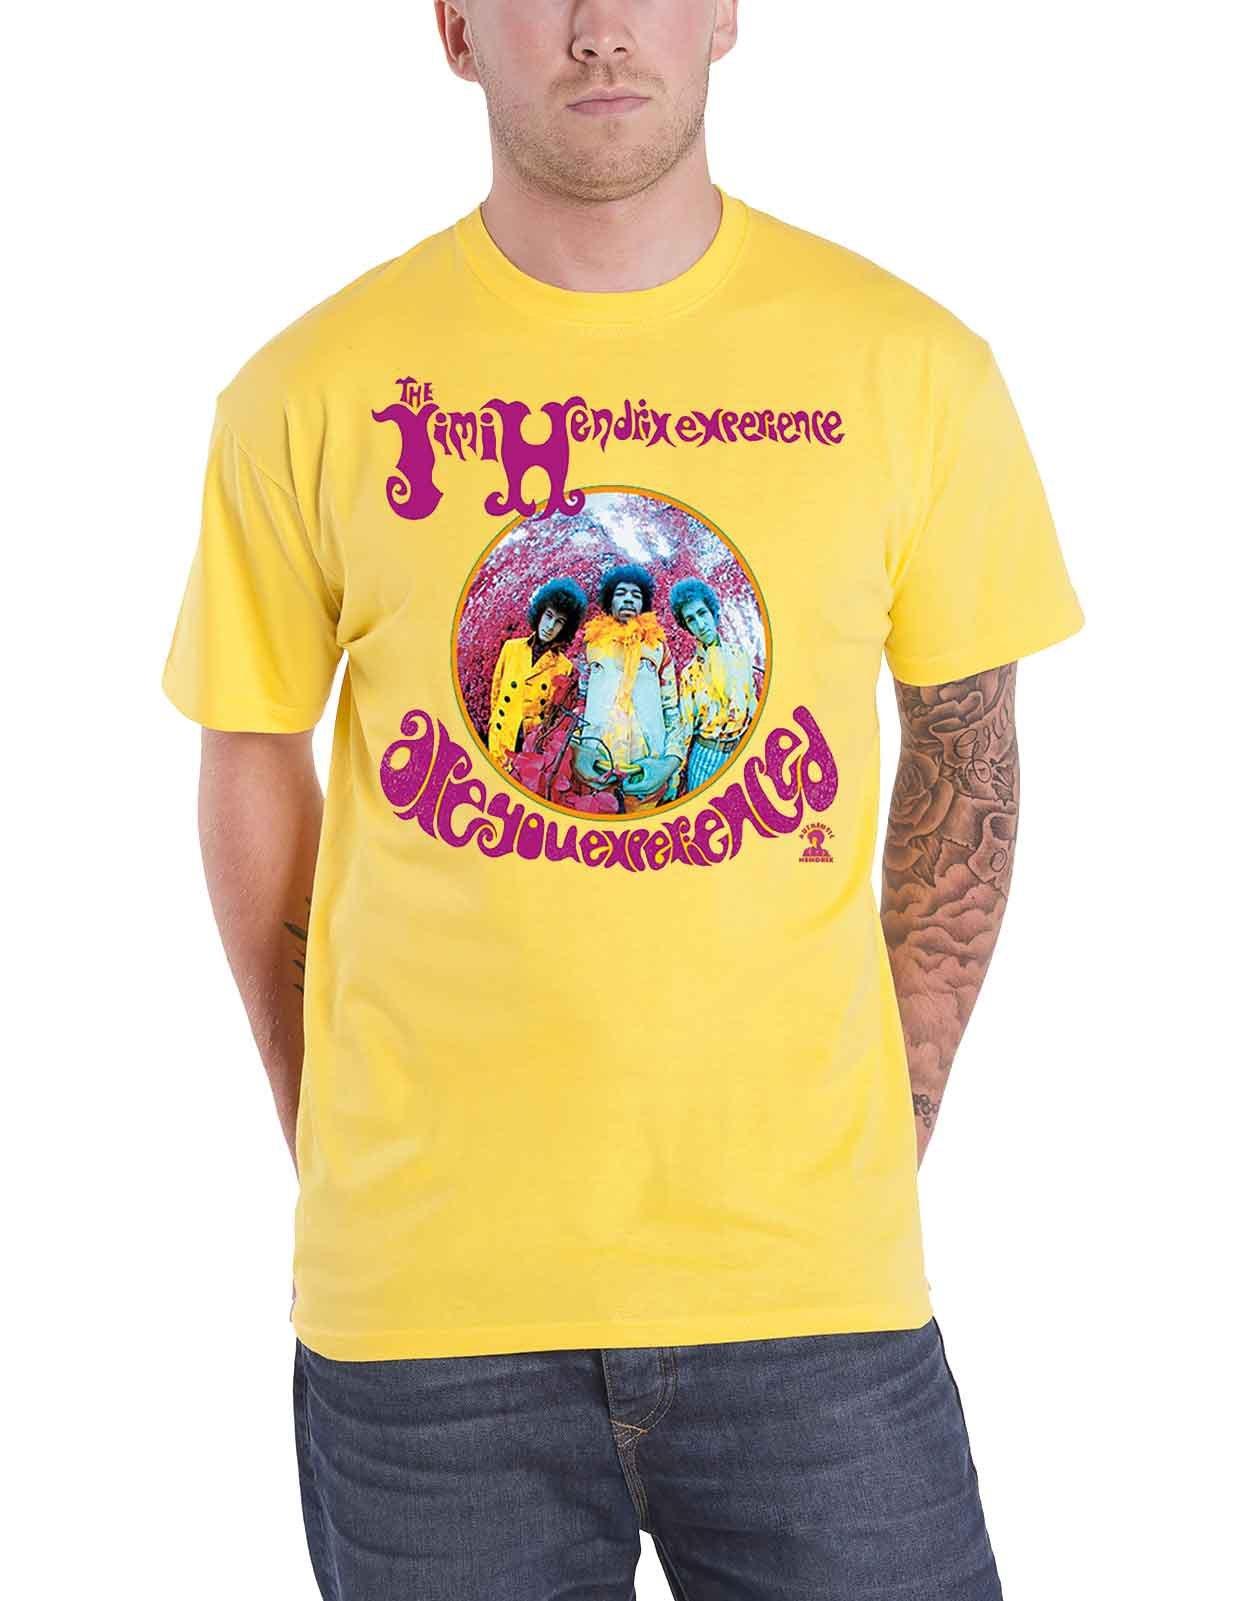 футболка вы опытный jimi hendrix фиолетовый Футболка «Вы опытный» Jimi Hendrix, желтый